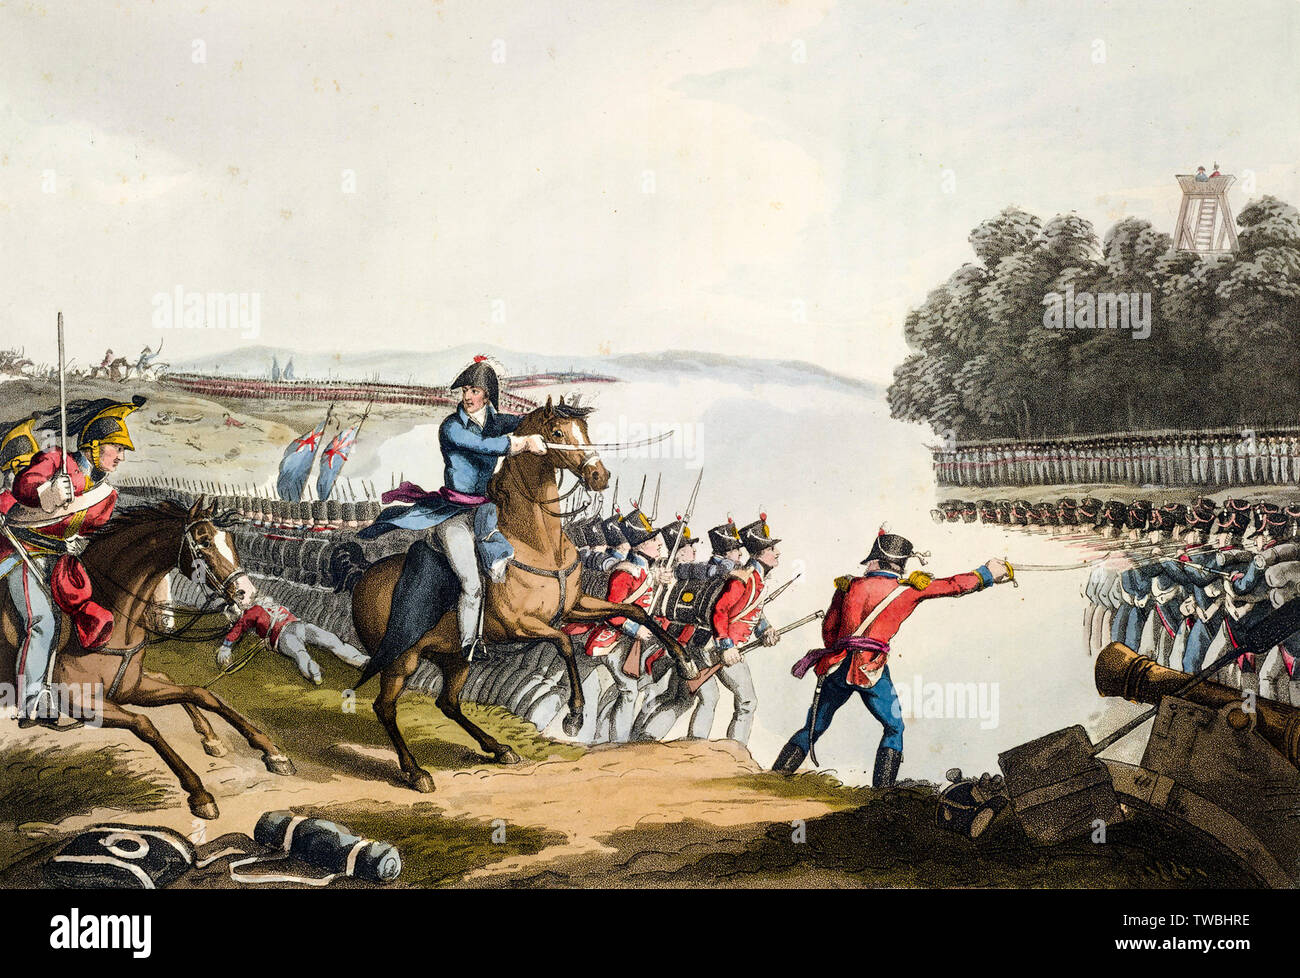 Le duc de Wellington, menant une charge sur la garde impériale française à la bataille de Waterloo, 18 juin 1815, gravure, 1819 Banque D'Images